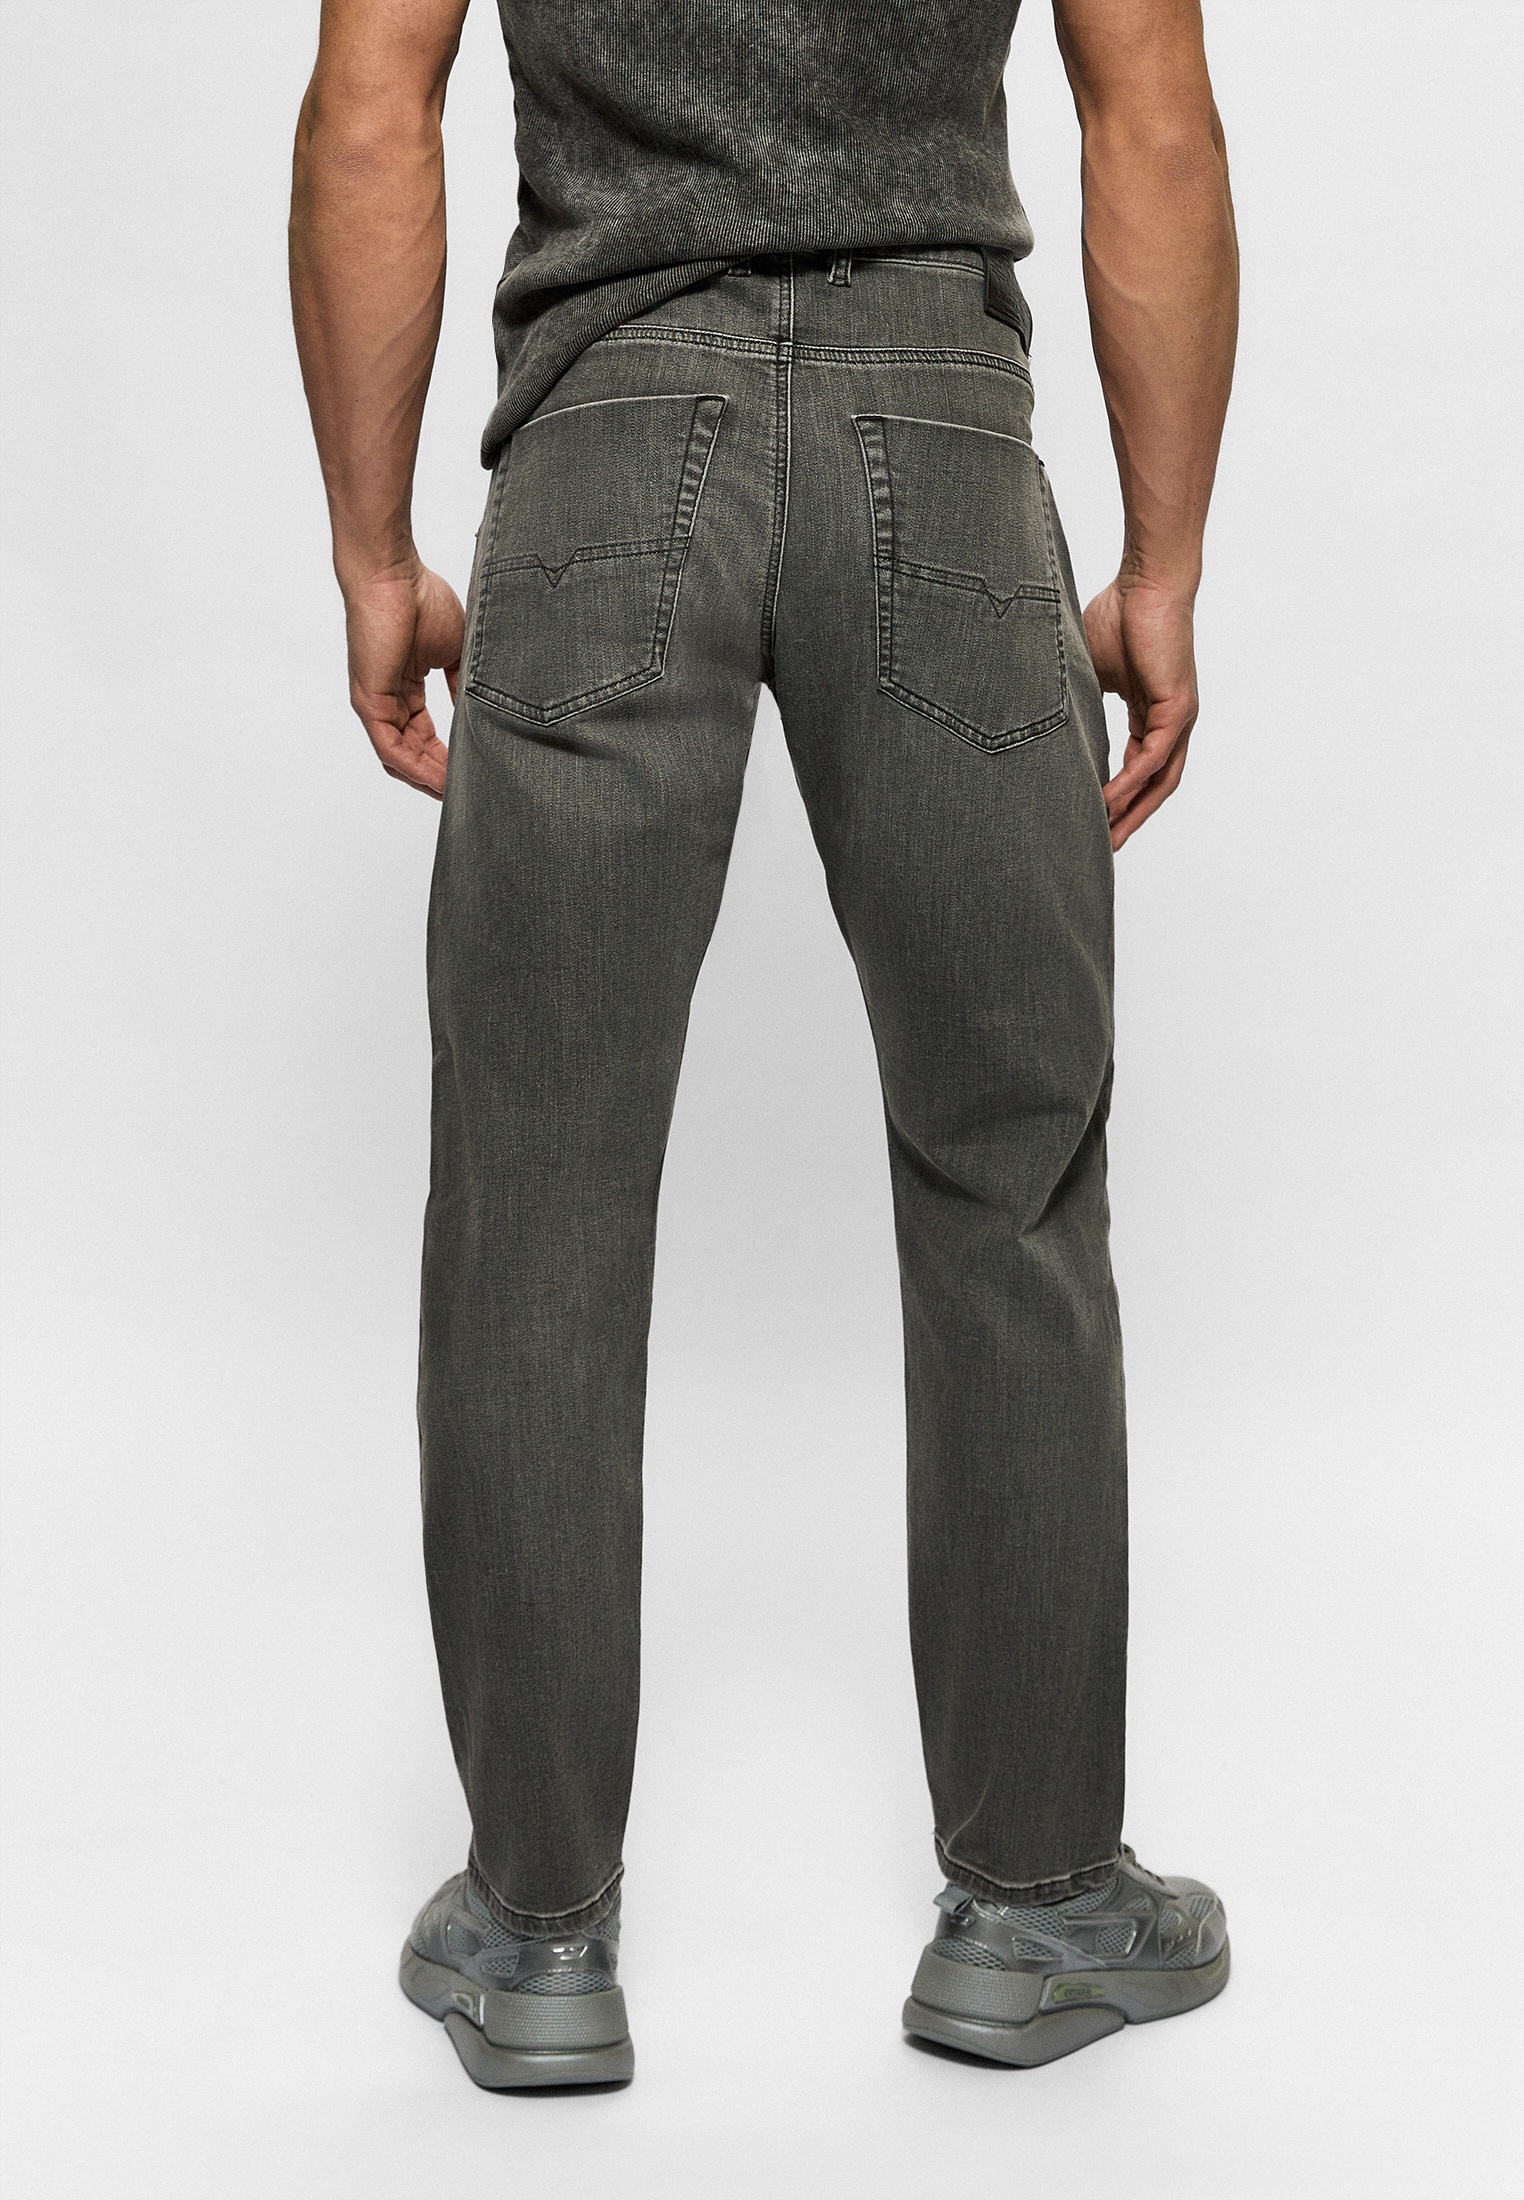 Мужские зауженные джинсы Diesel (Дизель) A0189709D06: изображение 3